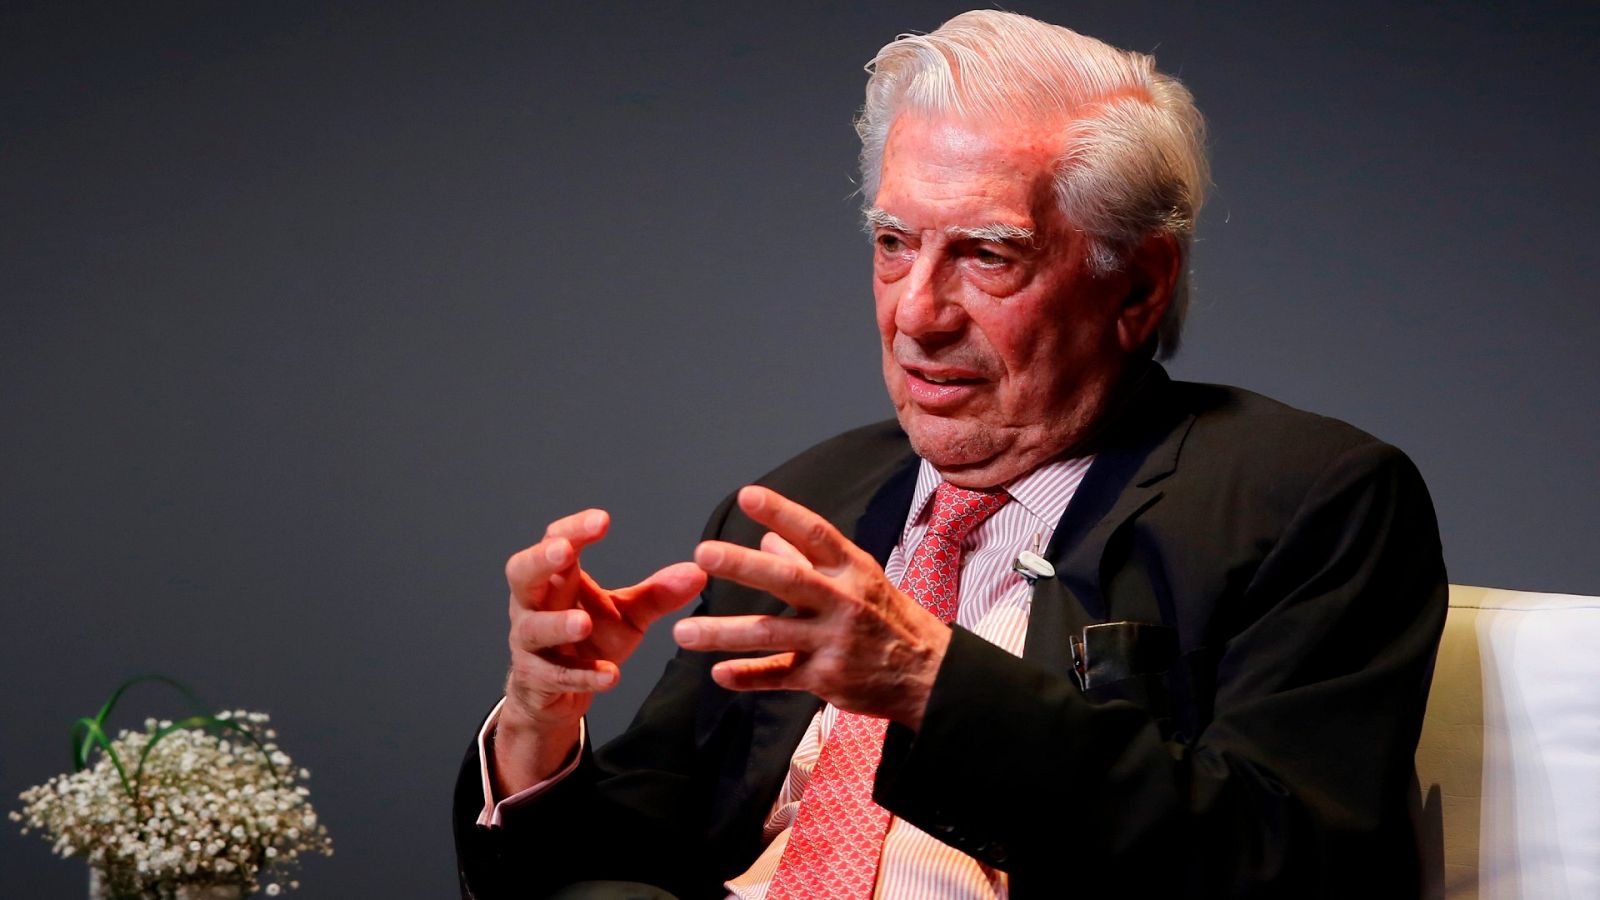 Fotografía fechada el 30 de mayo del 2019 donde aparece el escritor Mario Vargas Llosa durante una conferencia en Guadalajara (México).